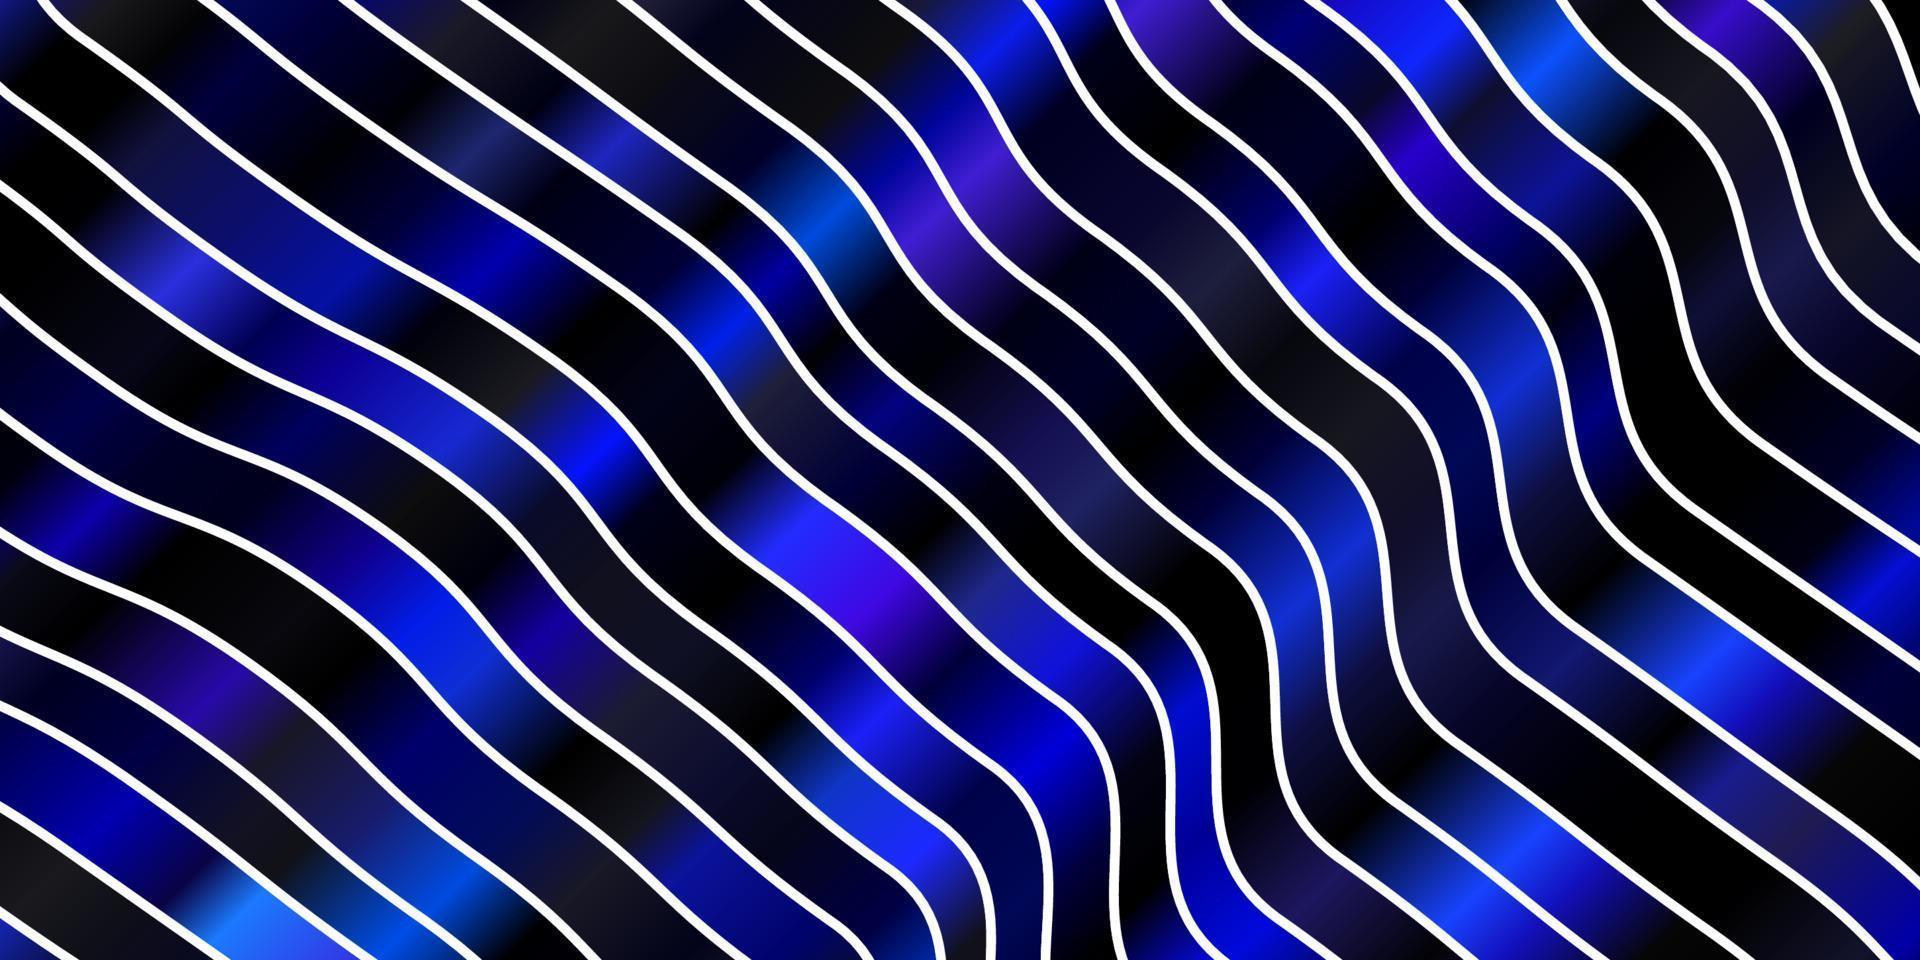 mörkrosa, blå vektormall med sneda linjer. vektor